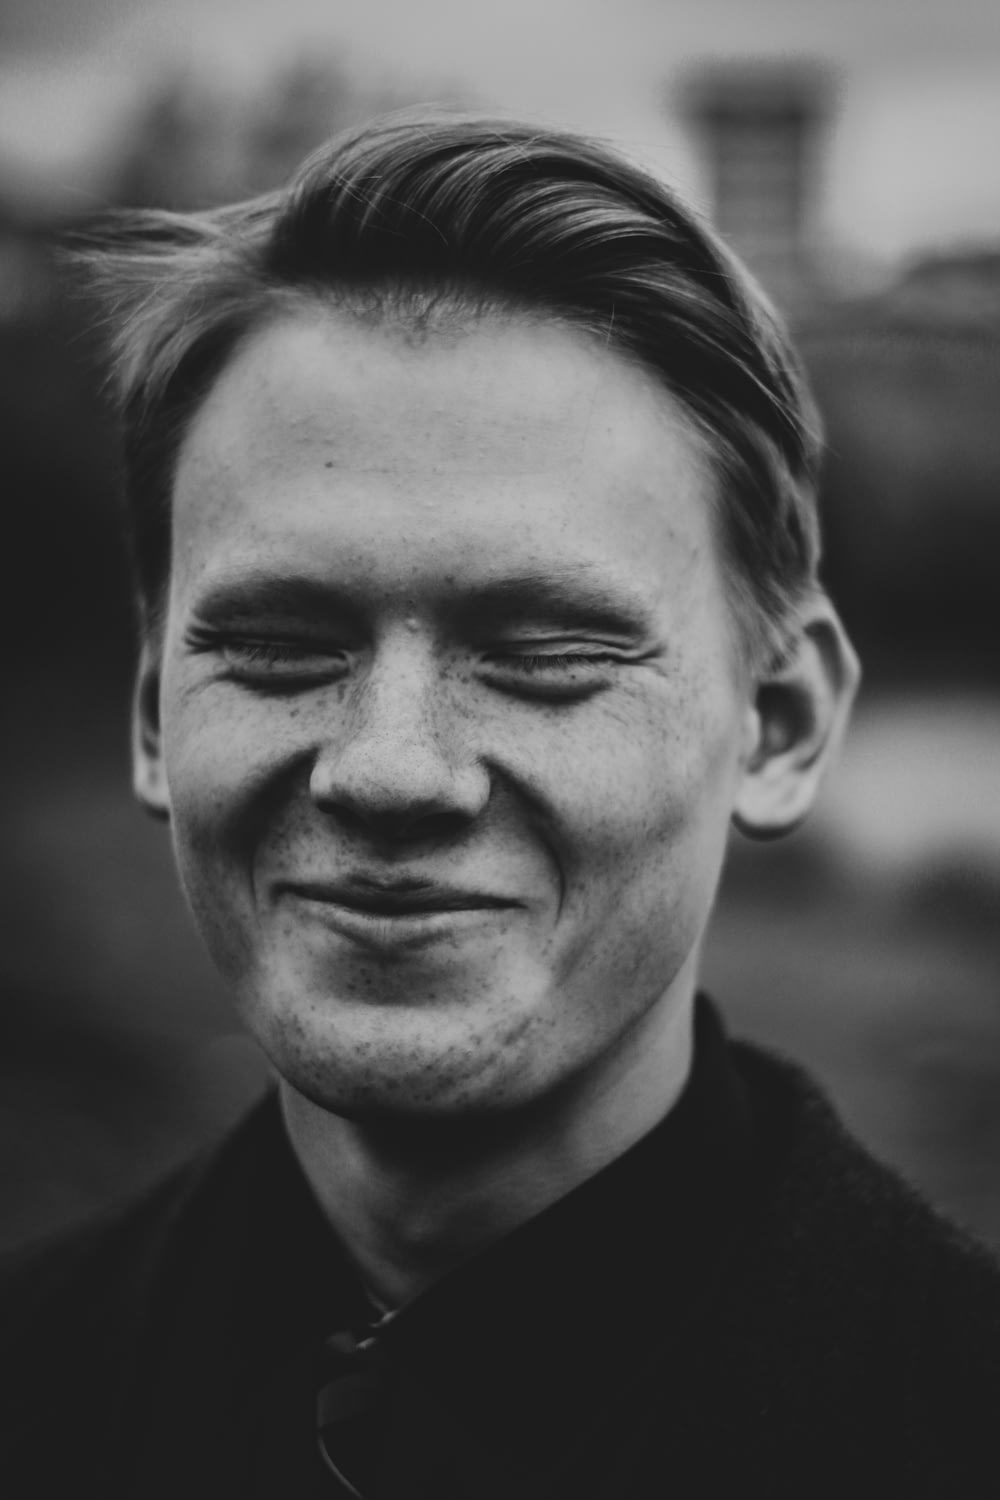 Foto in scala di grigi dell'uomo sorridente